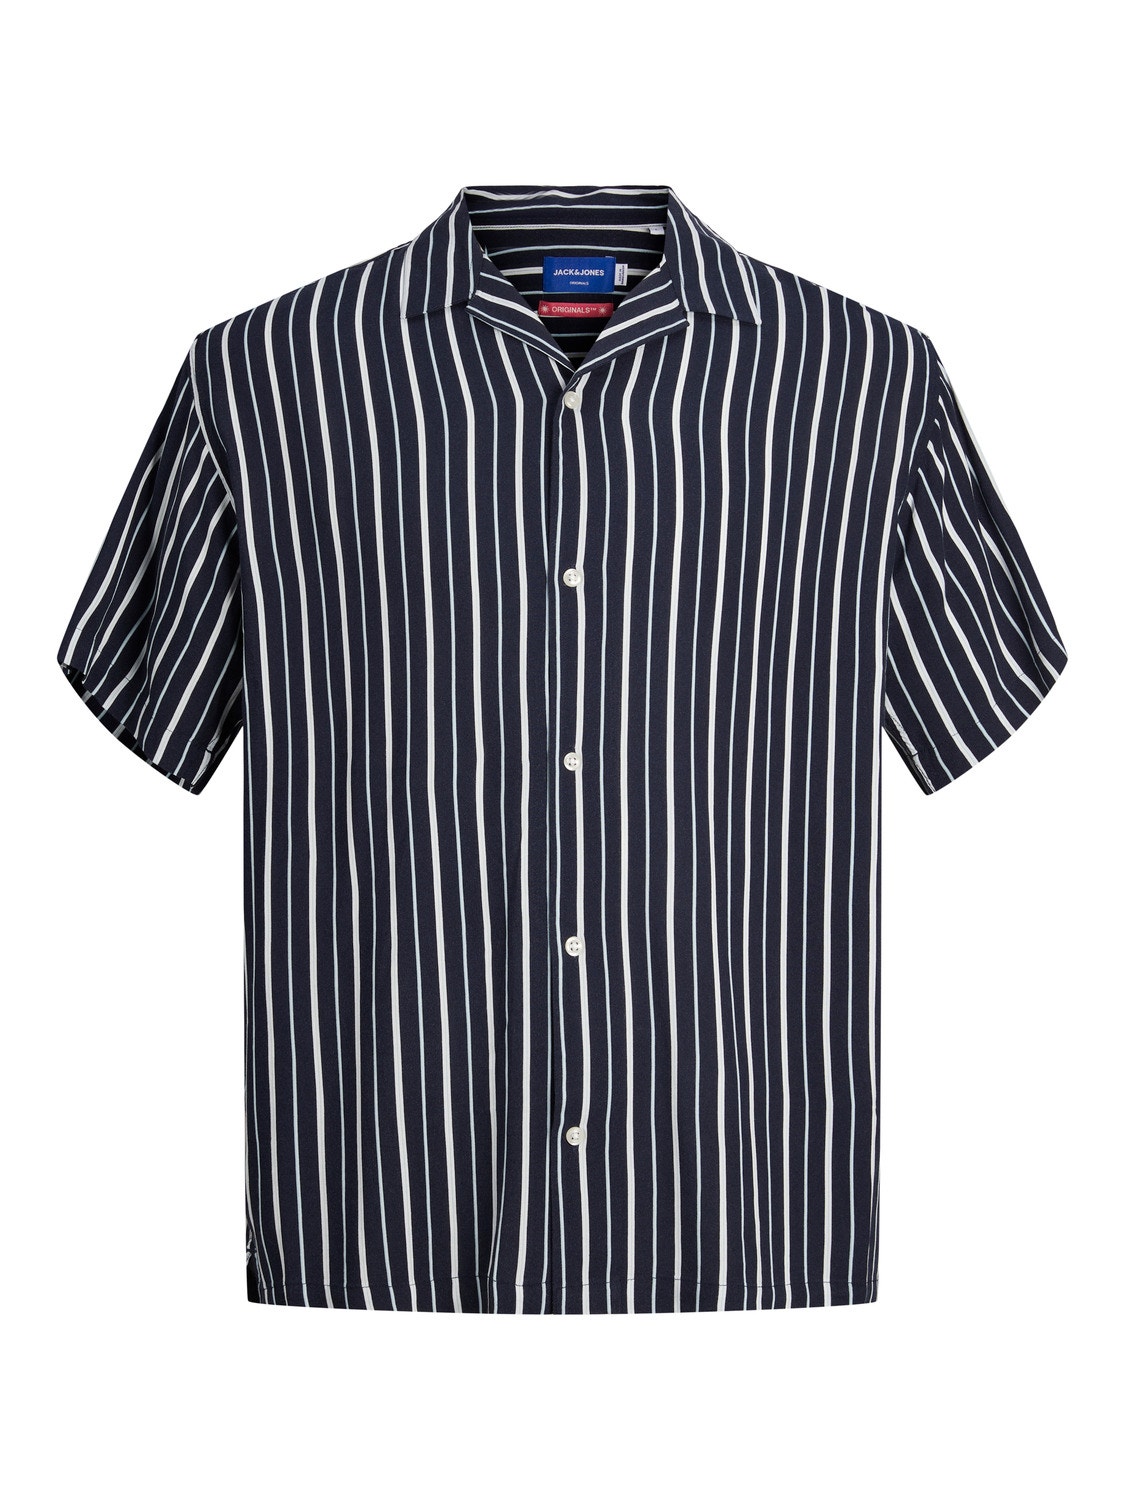 Jack & Jones Plus Size Relaxed Fit Kurorto marškiniai -Sky Captain - 12261512